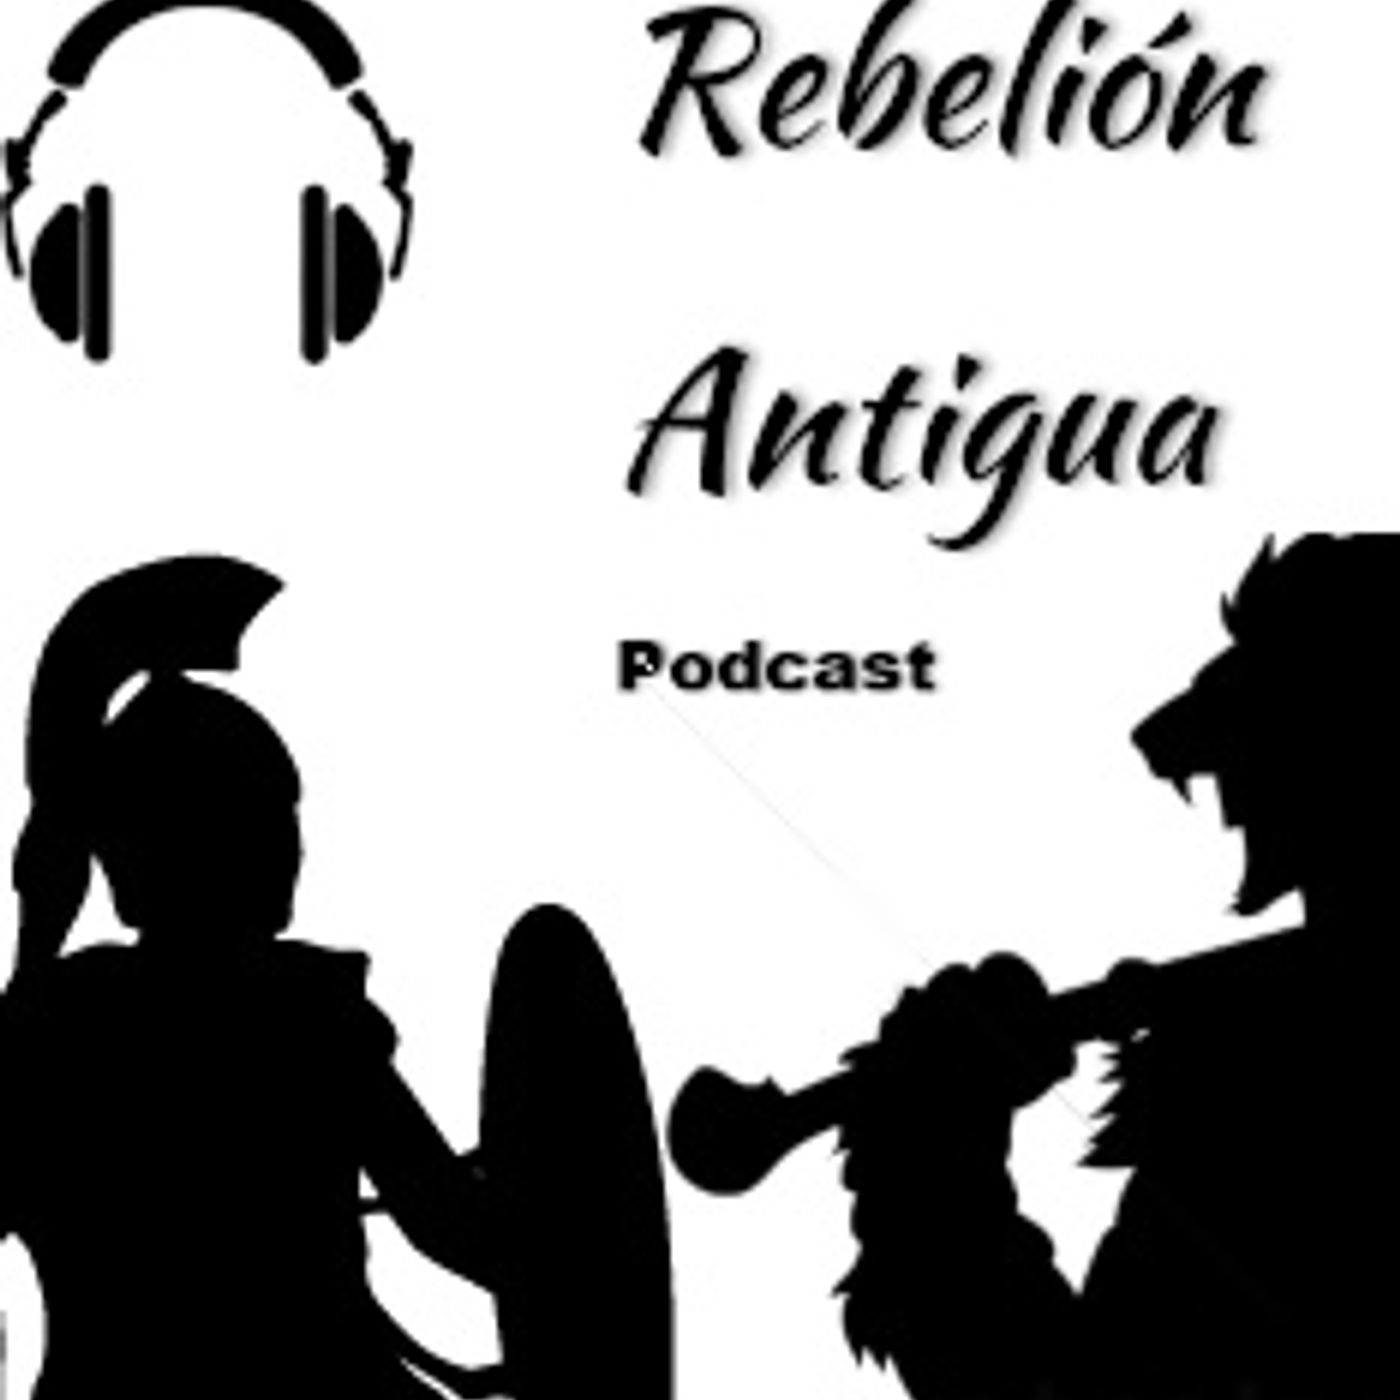 Rebelión Antigua Podcast